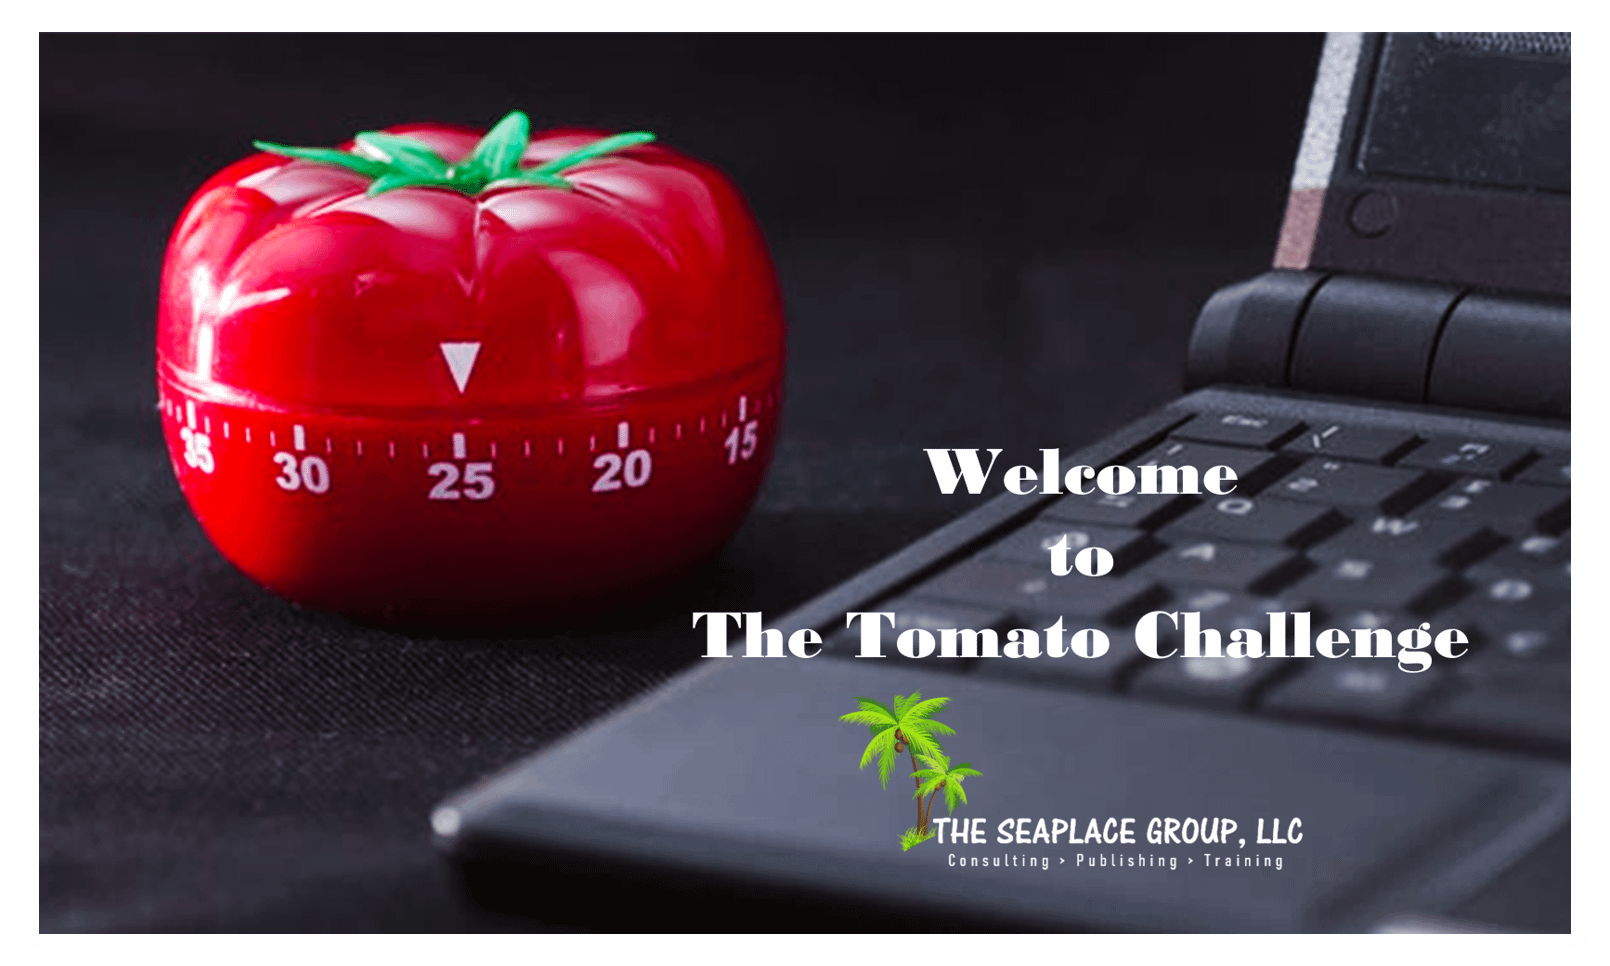 The-Tomato-Challenge at BusinessGuru-TerryHHill.com